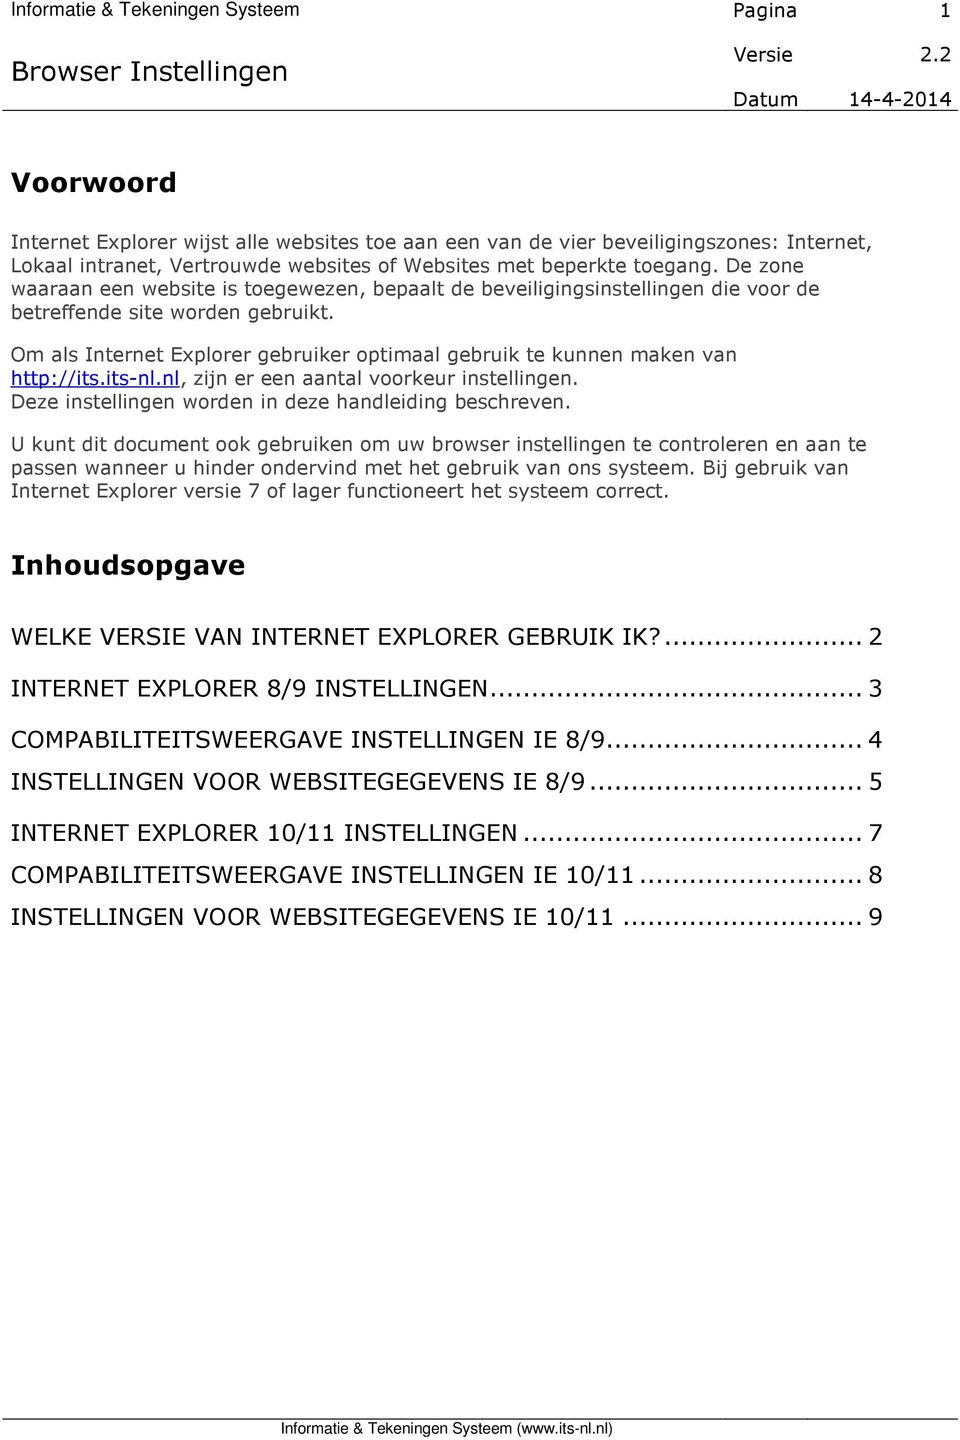 Om als Internet Explorer gebruiker optimaal gebruik te kunnen maken van http://its.its-nl.nl, zijn er een aantal voorkeur instellingen. Deze instellingen worden in deze handleiding beschreven.